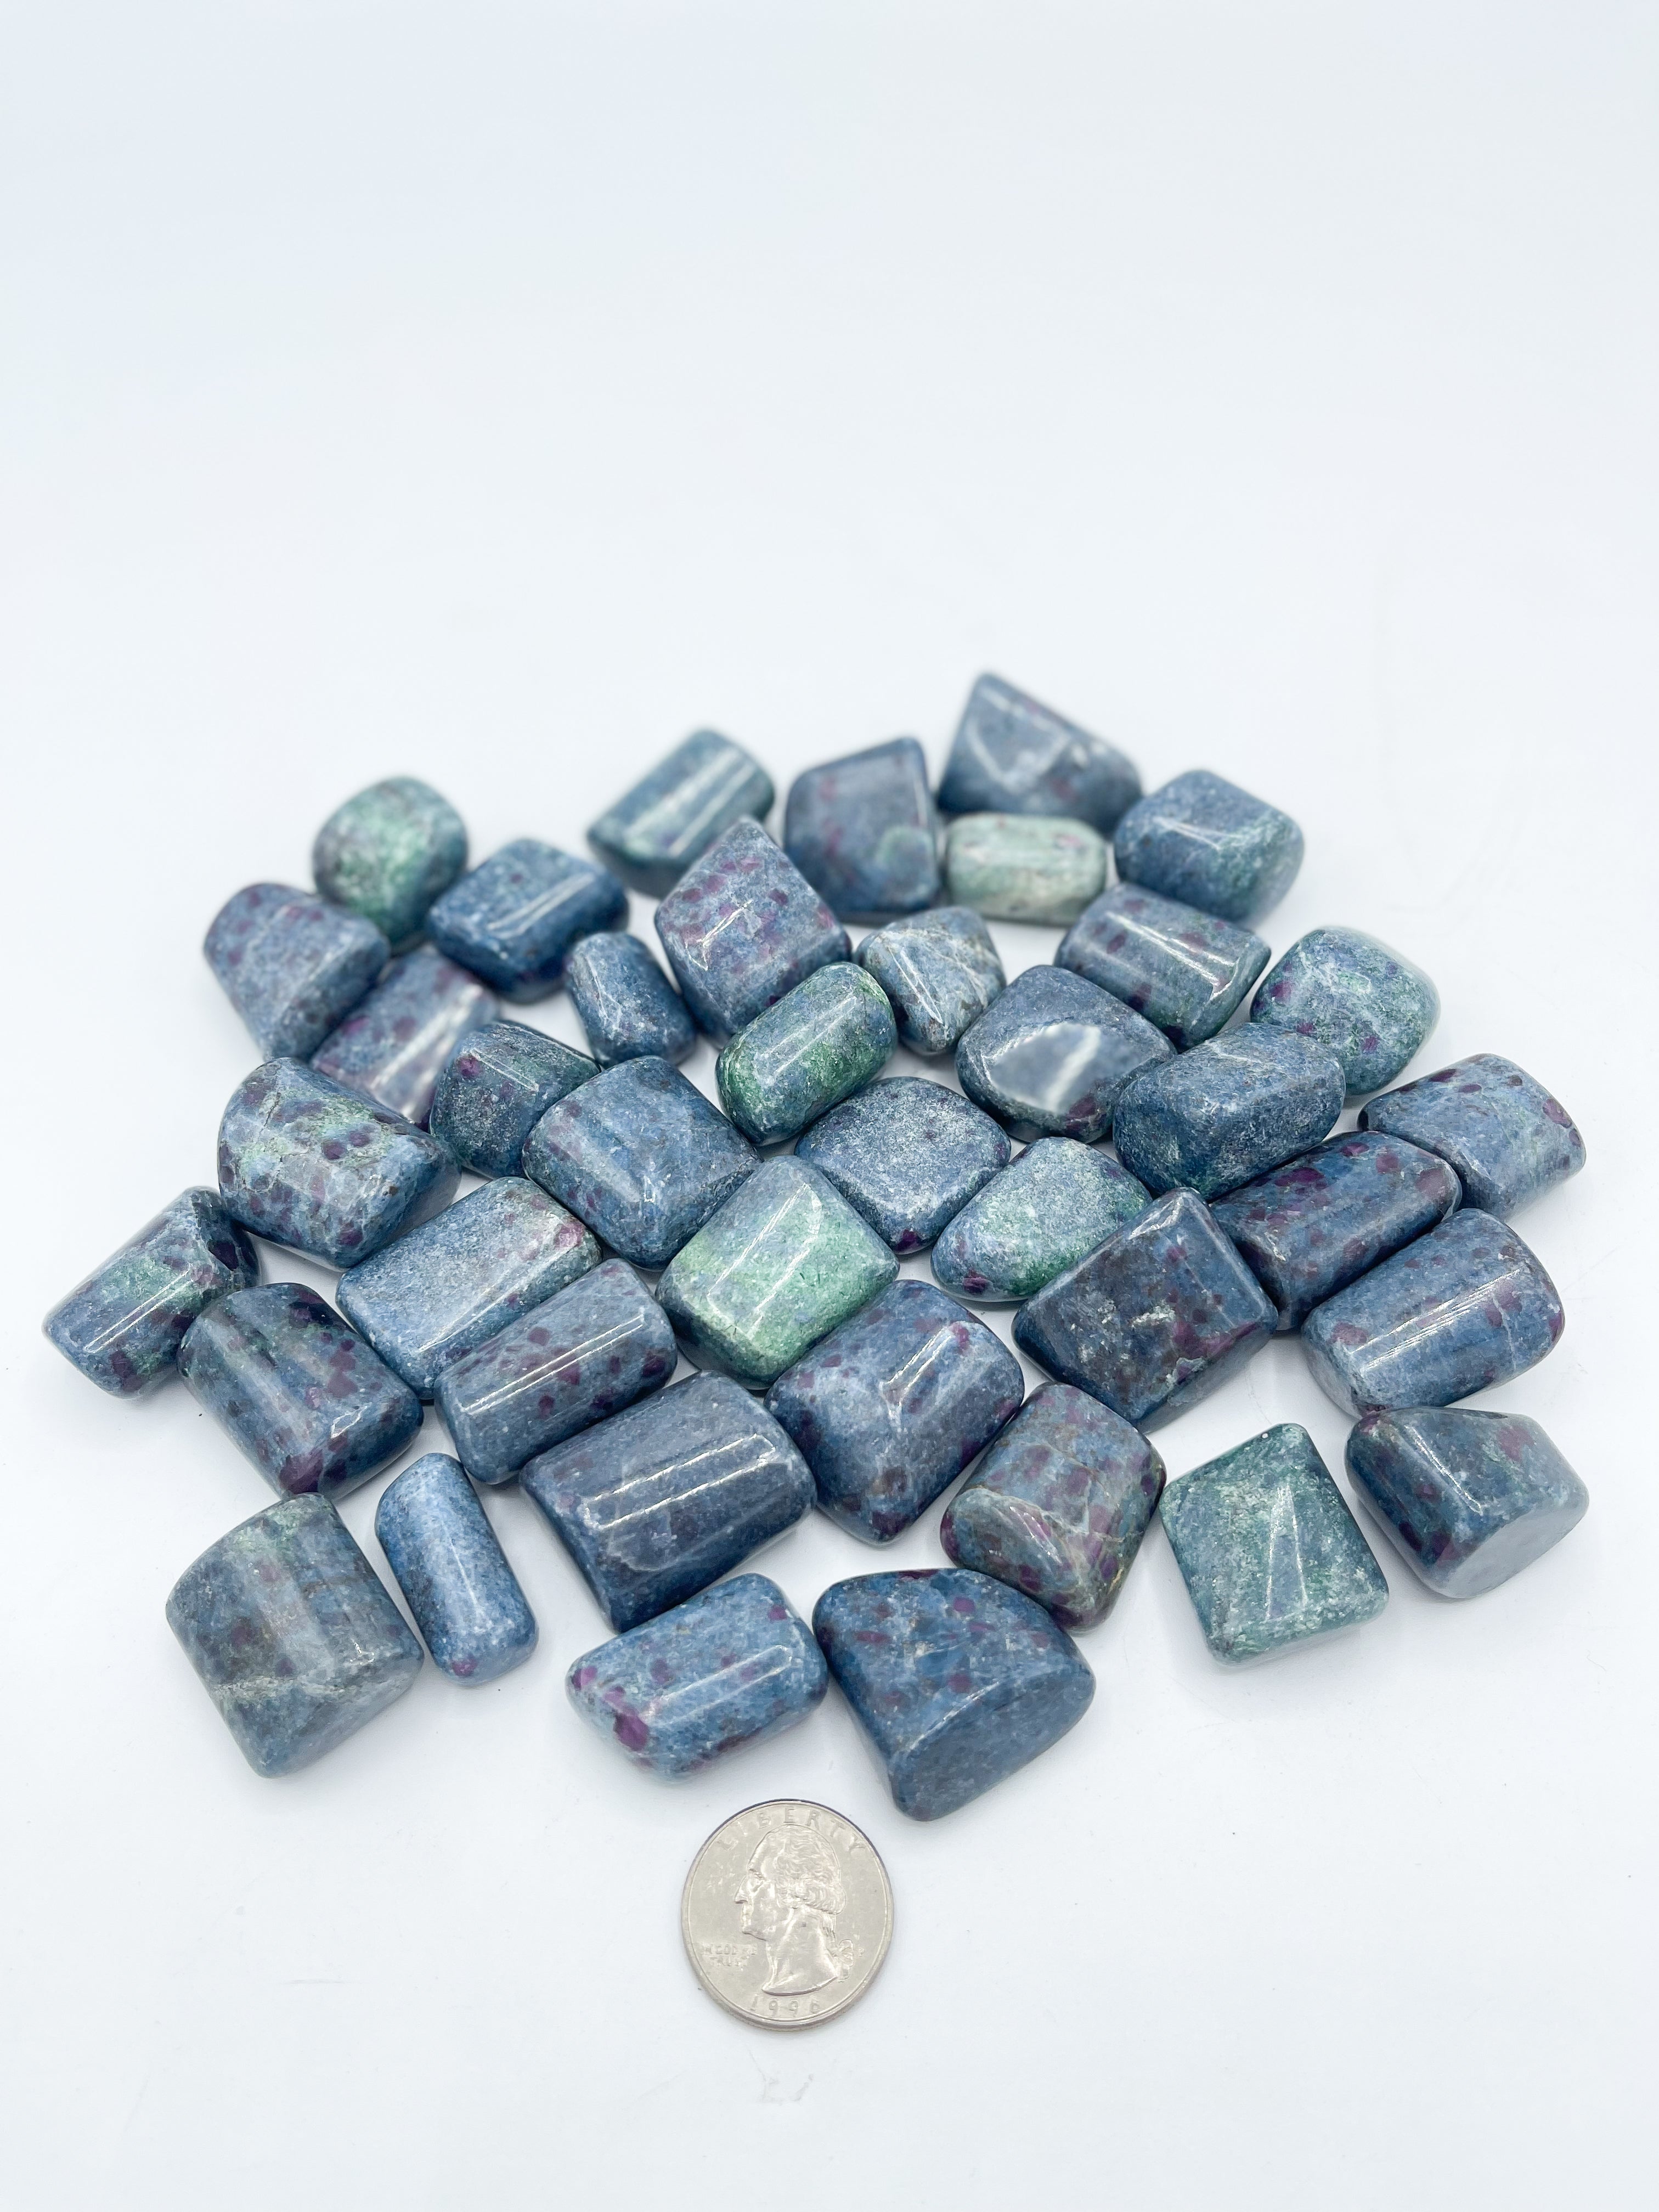 Ruby In Kyanite Tumbled Stones | Wholesale